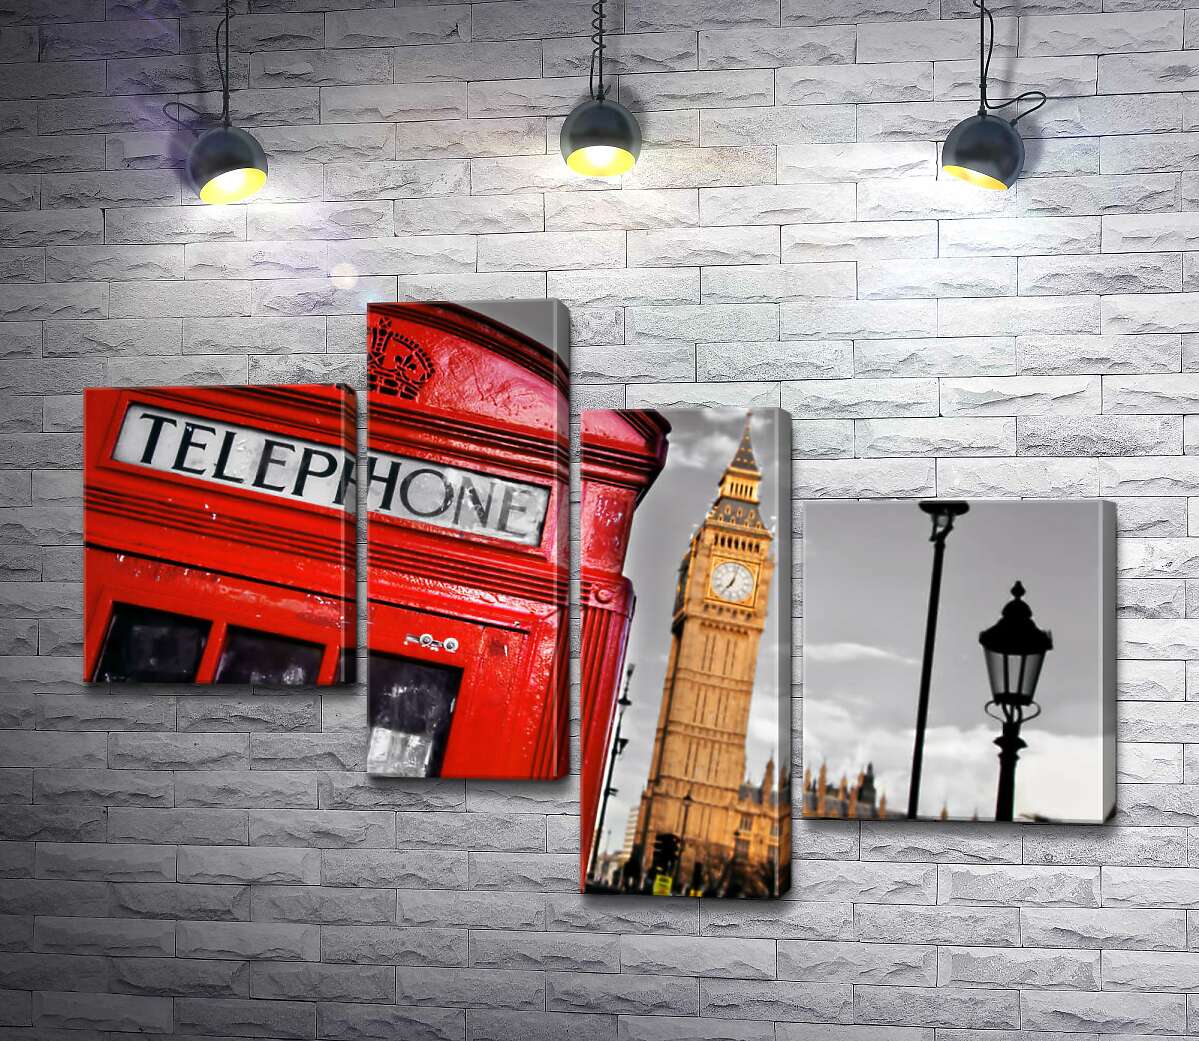 

Модульная картина ArtPoster Символы Лондона: красная телефонная будка и часовая башня Биг Бен (Big Ben) 100x69 см Модуль №20